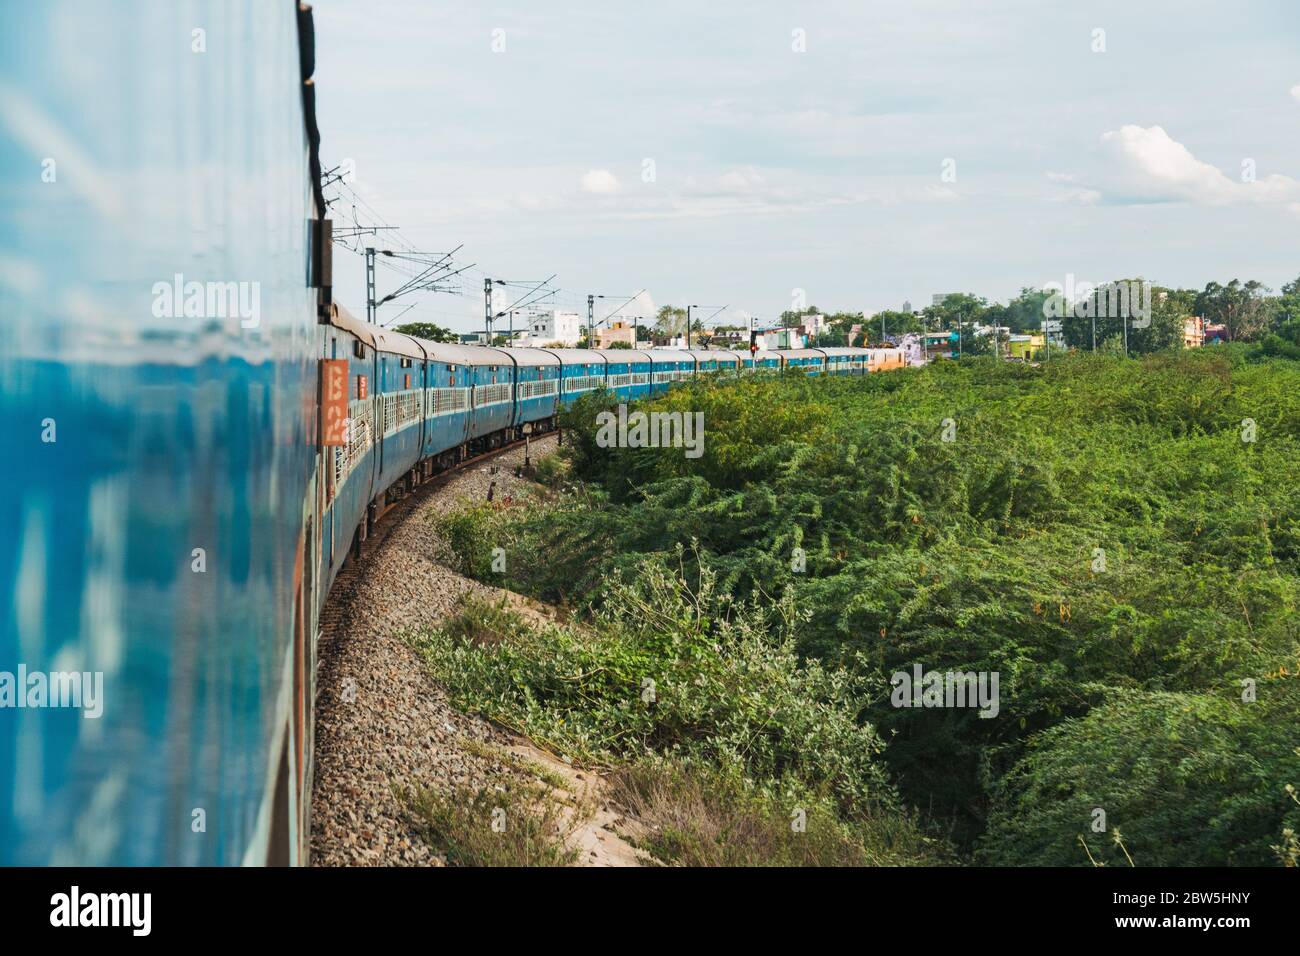 Der Blick auf die Wagen von der Zugtür, wie es eine Kurve nähert Madurai, Tamil Nadu, Indien Stockfoto